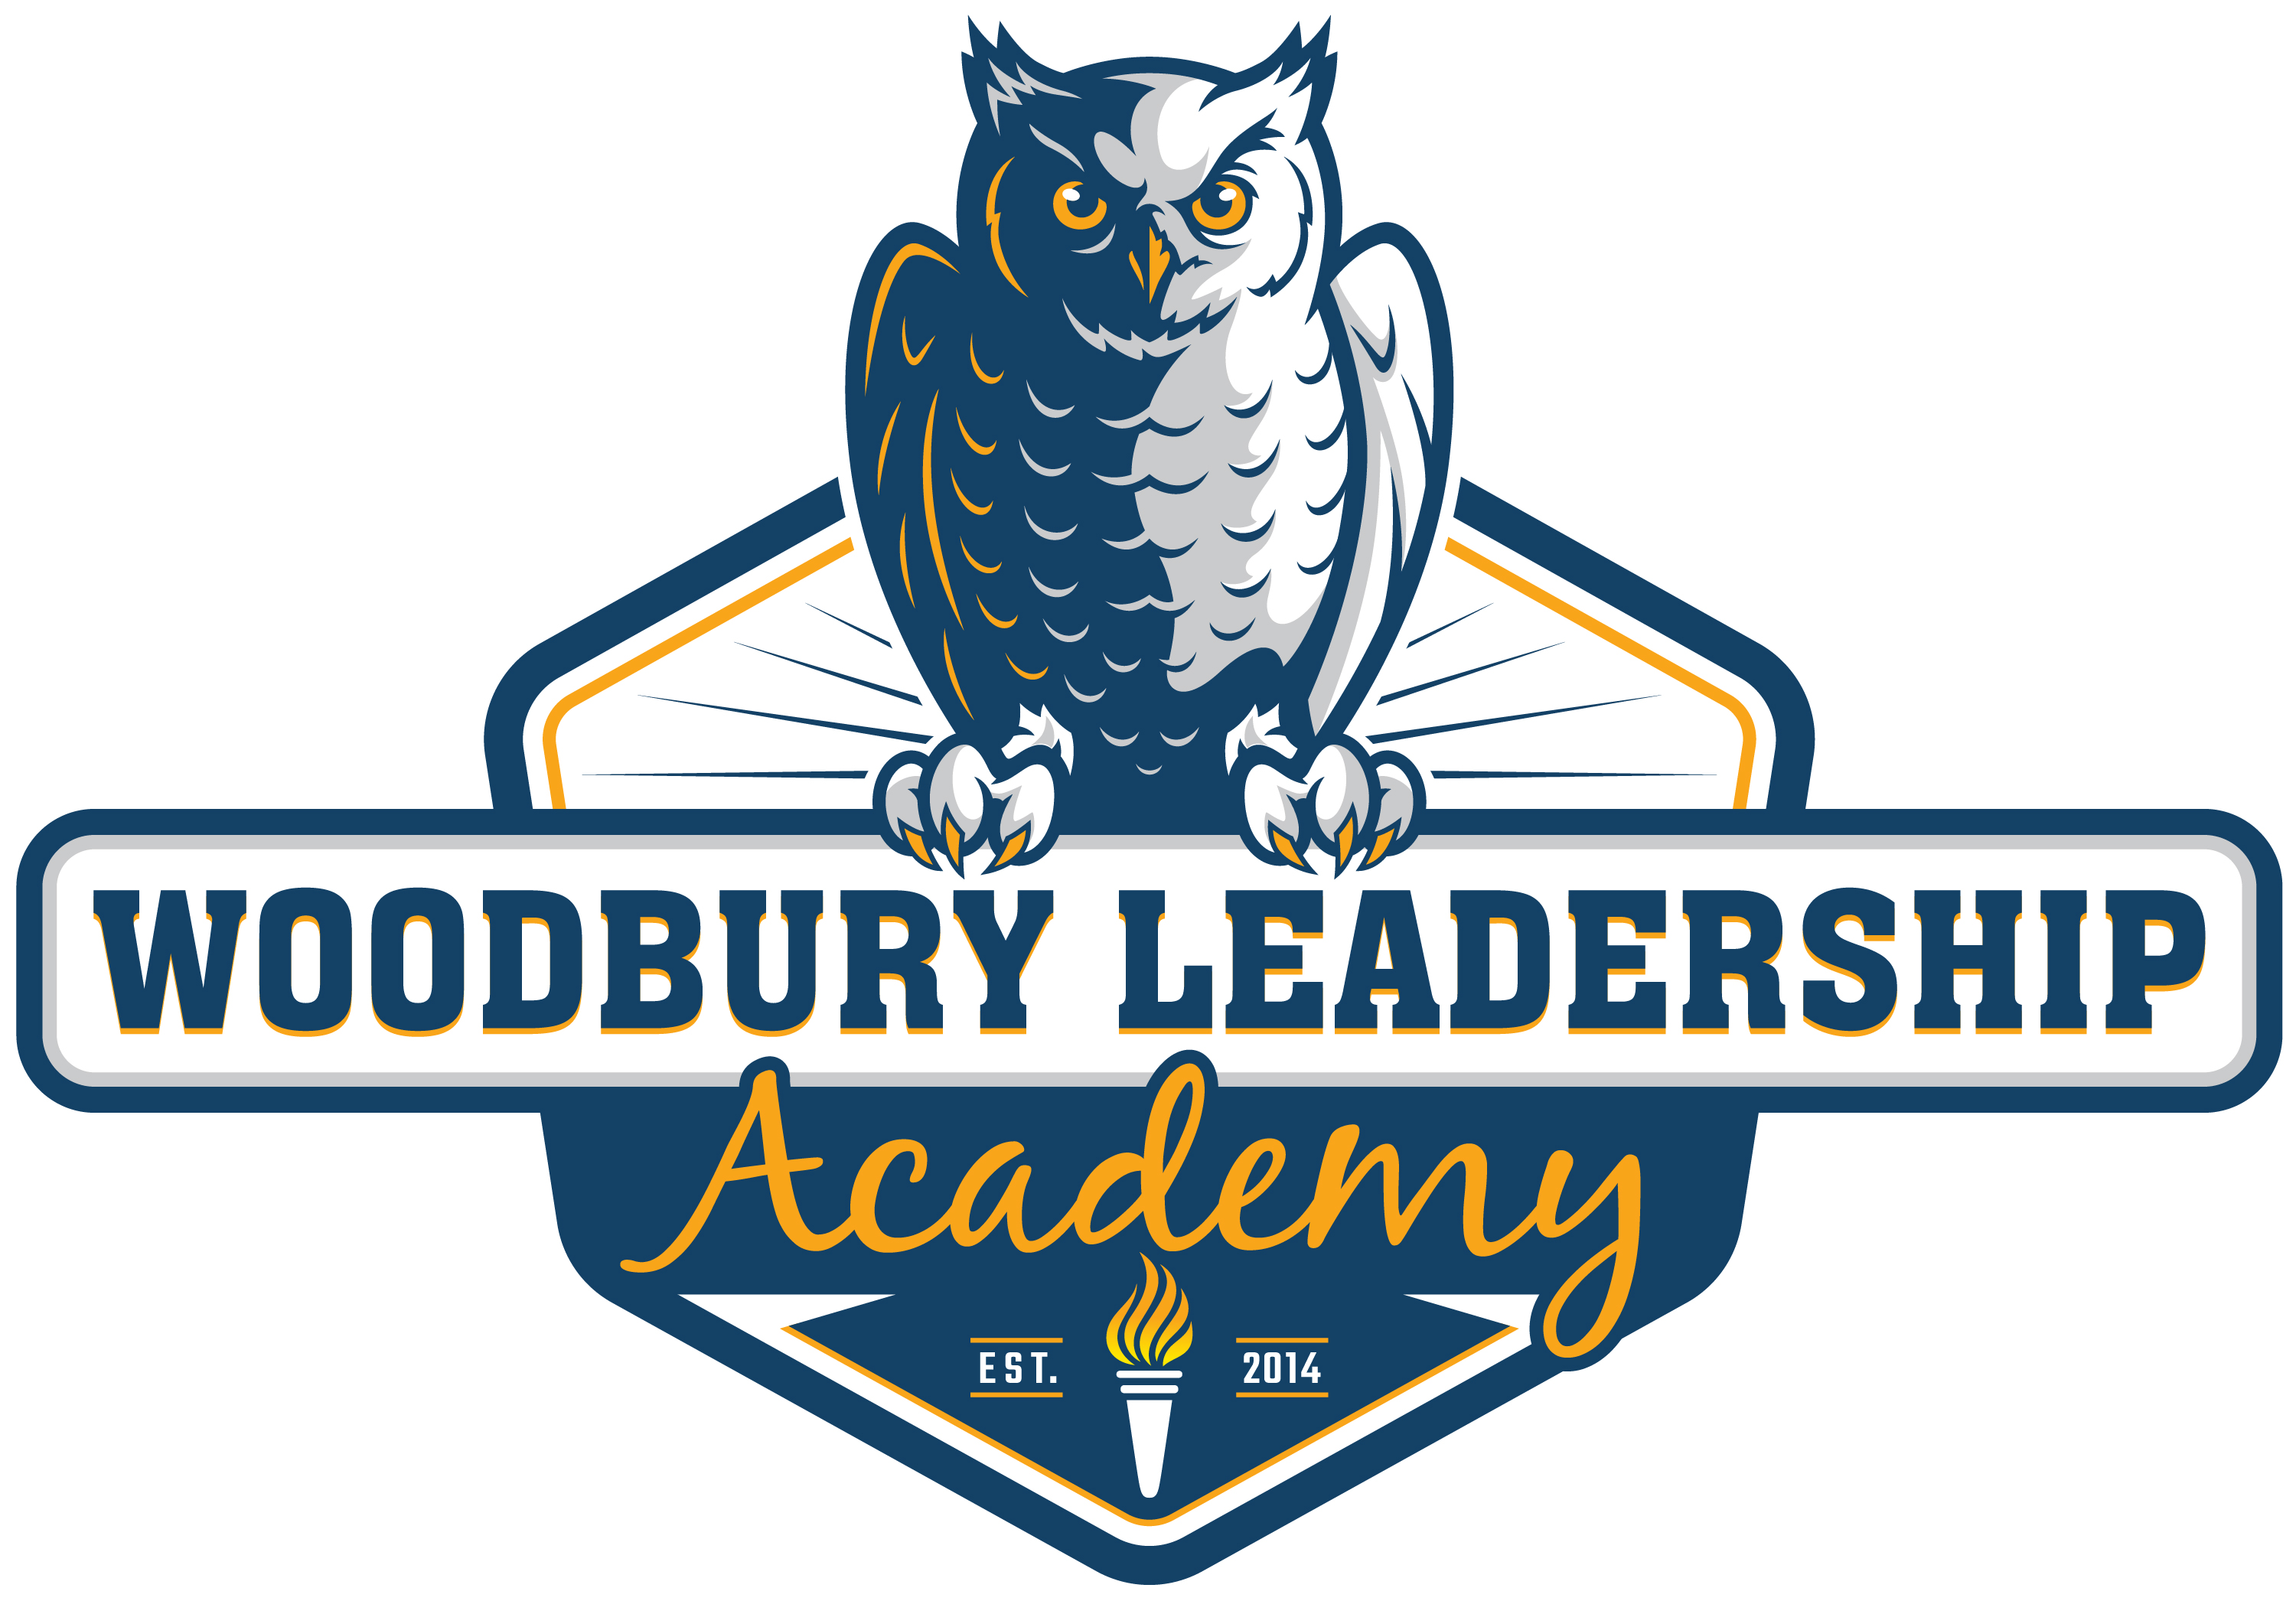 Woodbury Leadership Academy